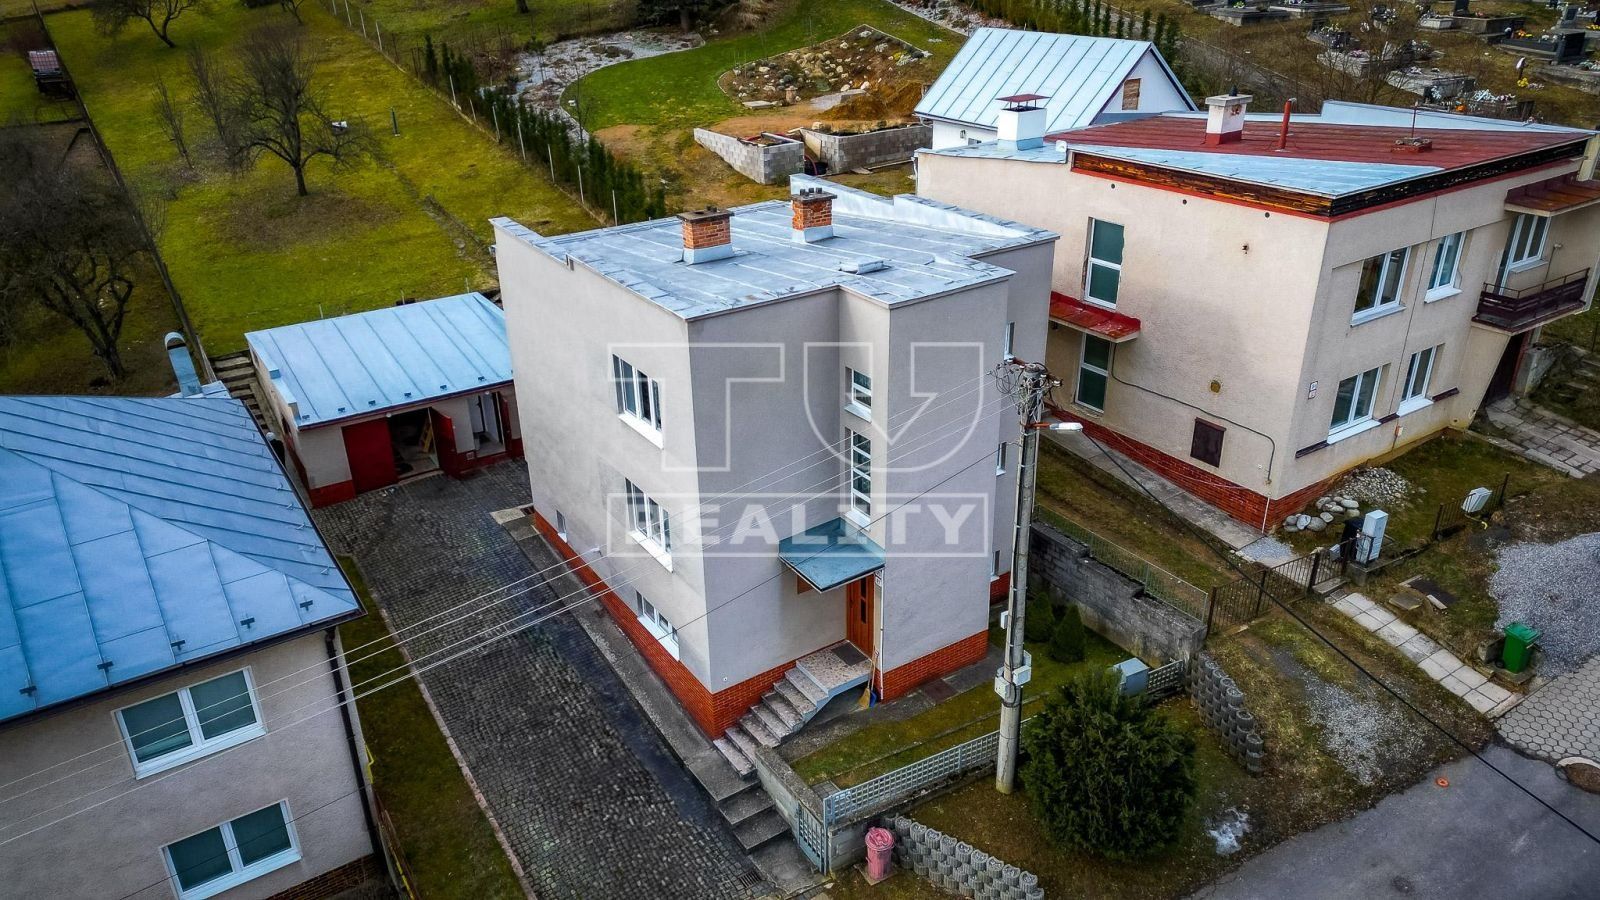 Predaj rodinného domu v blízkosti Banskej Bystrici v obci Nemce, pozemok 1253 m2